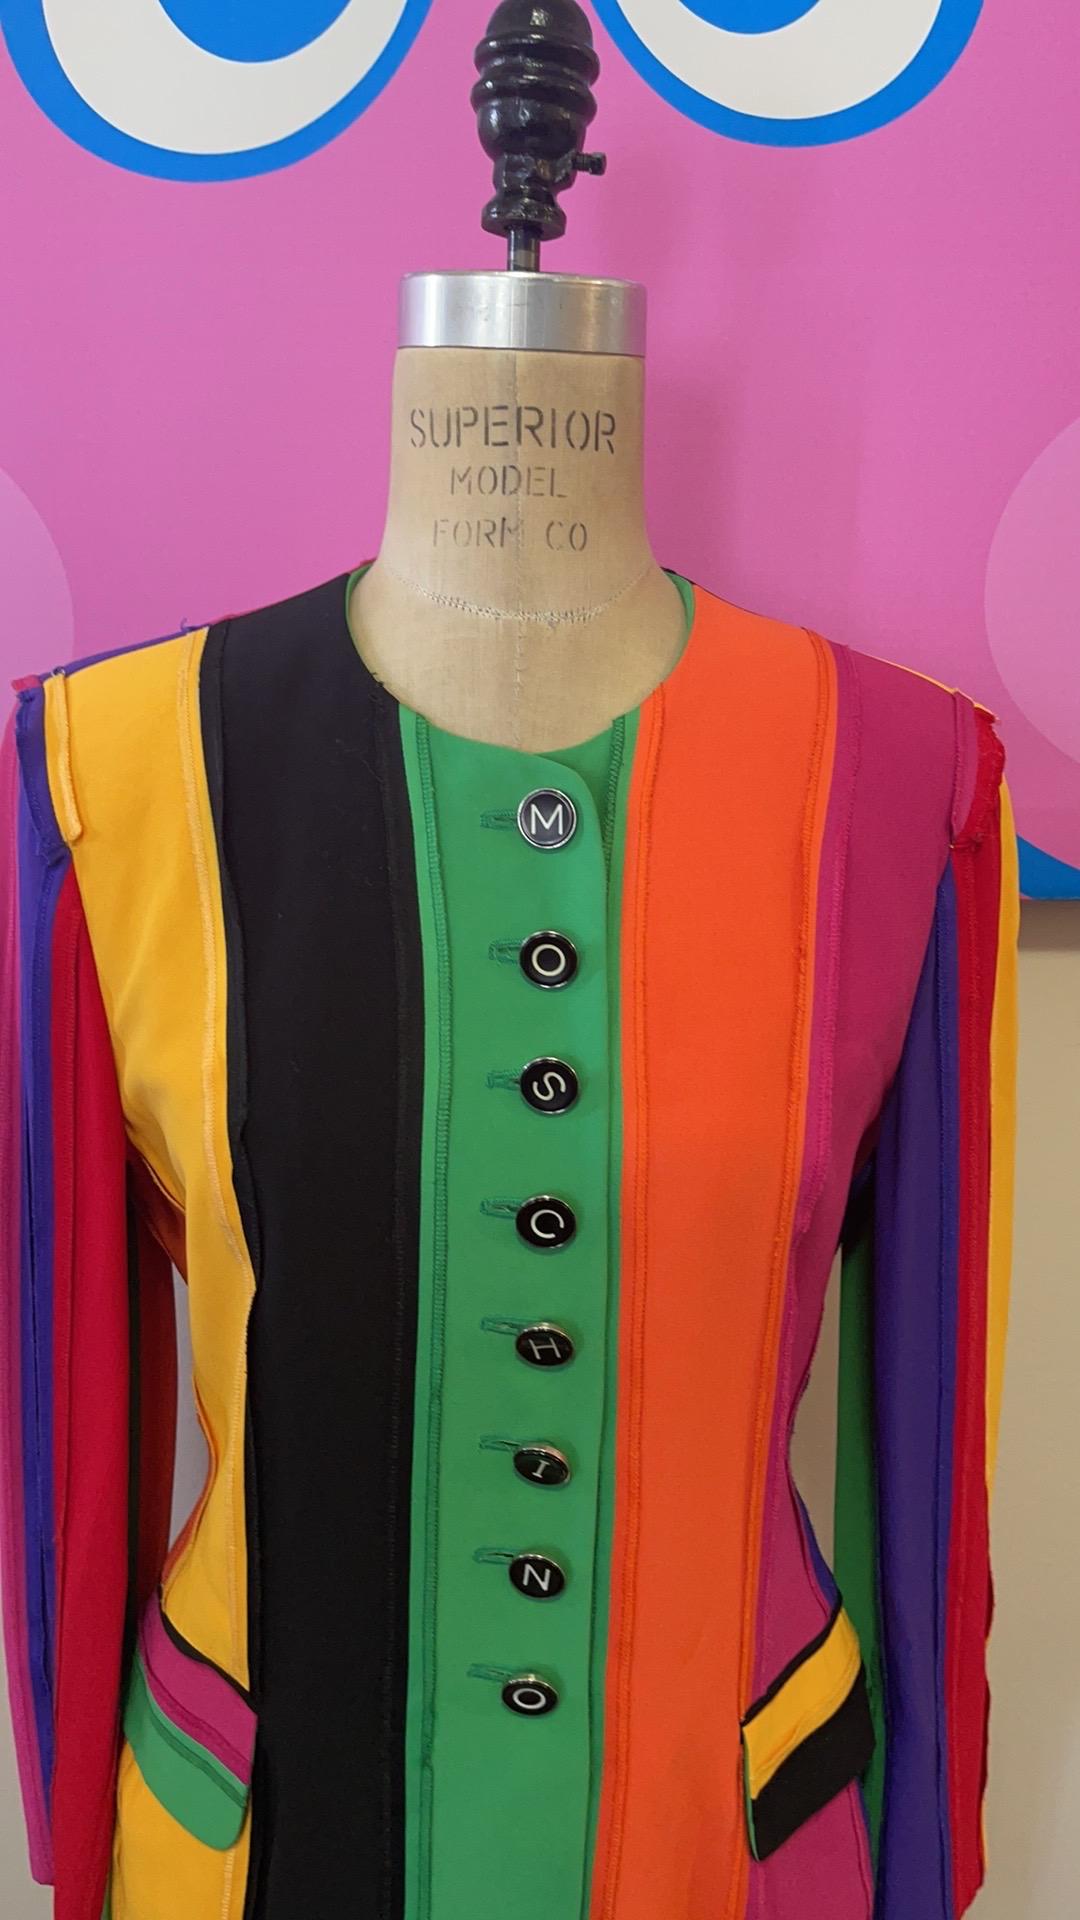 Moschino Couture Regenbogen Stolz Vintage Blazer

Seien Sie retro cool mit dieser super seltenen Vintage-Jacke von Moschino! Einzigartige Knöpfe auf der Vorderseite und an den Ärmeln verdeutlichen den Markennamen. Die Weste dieses Stils wurde durch